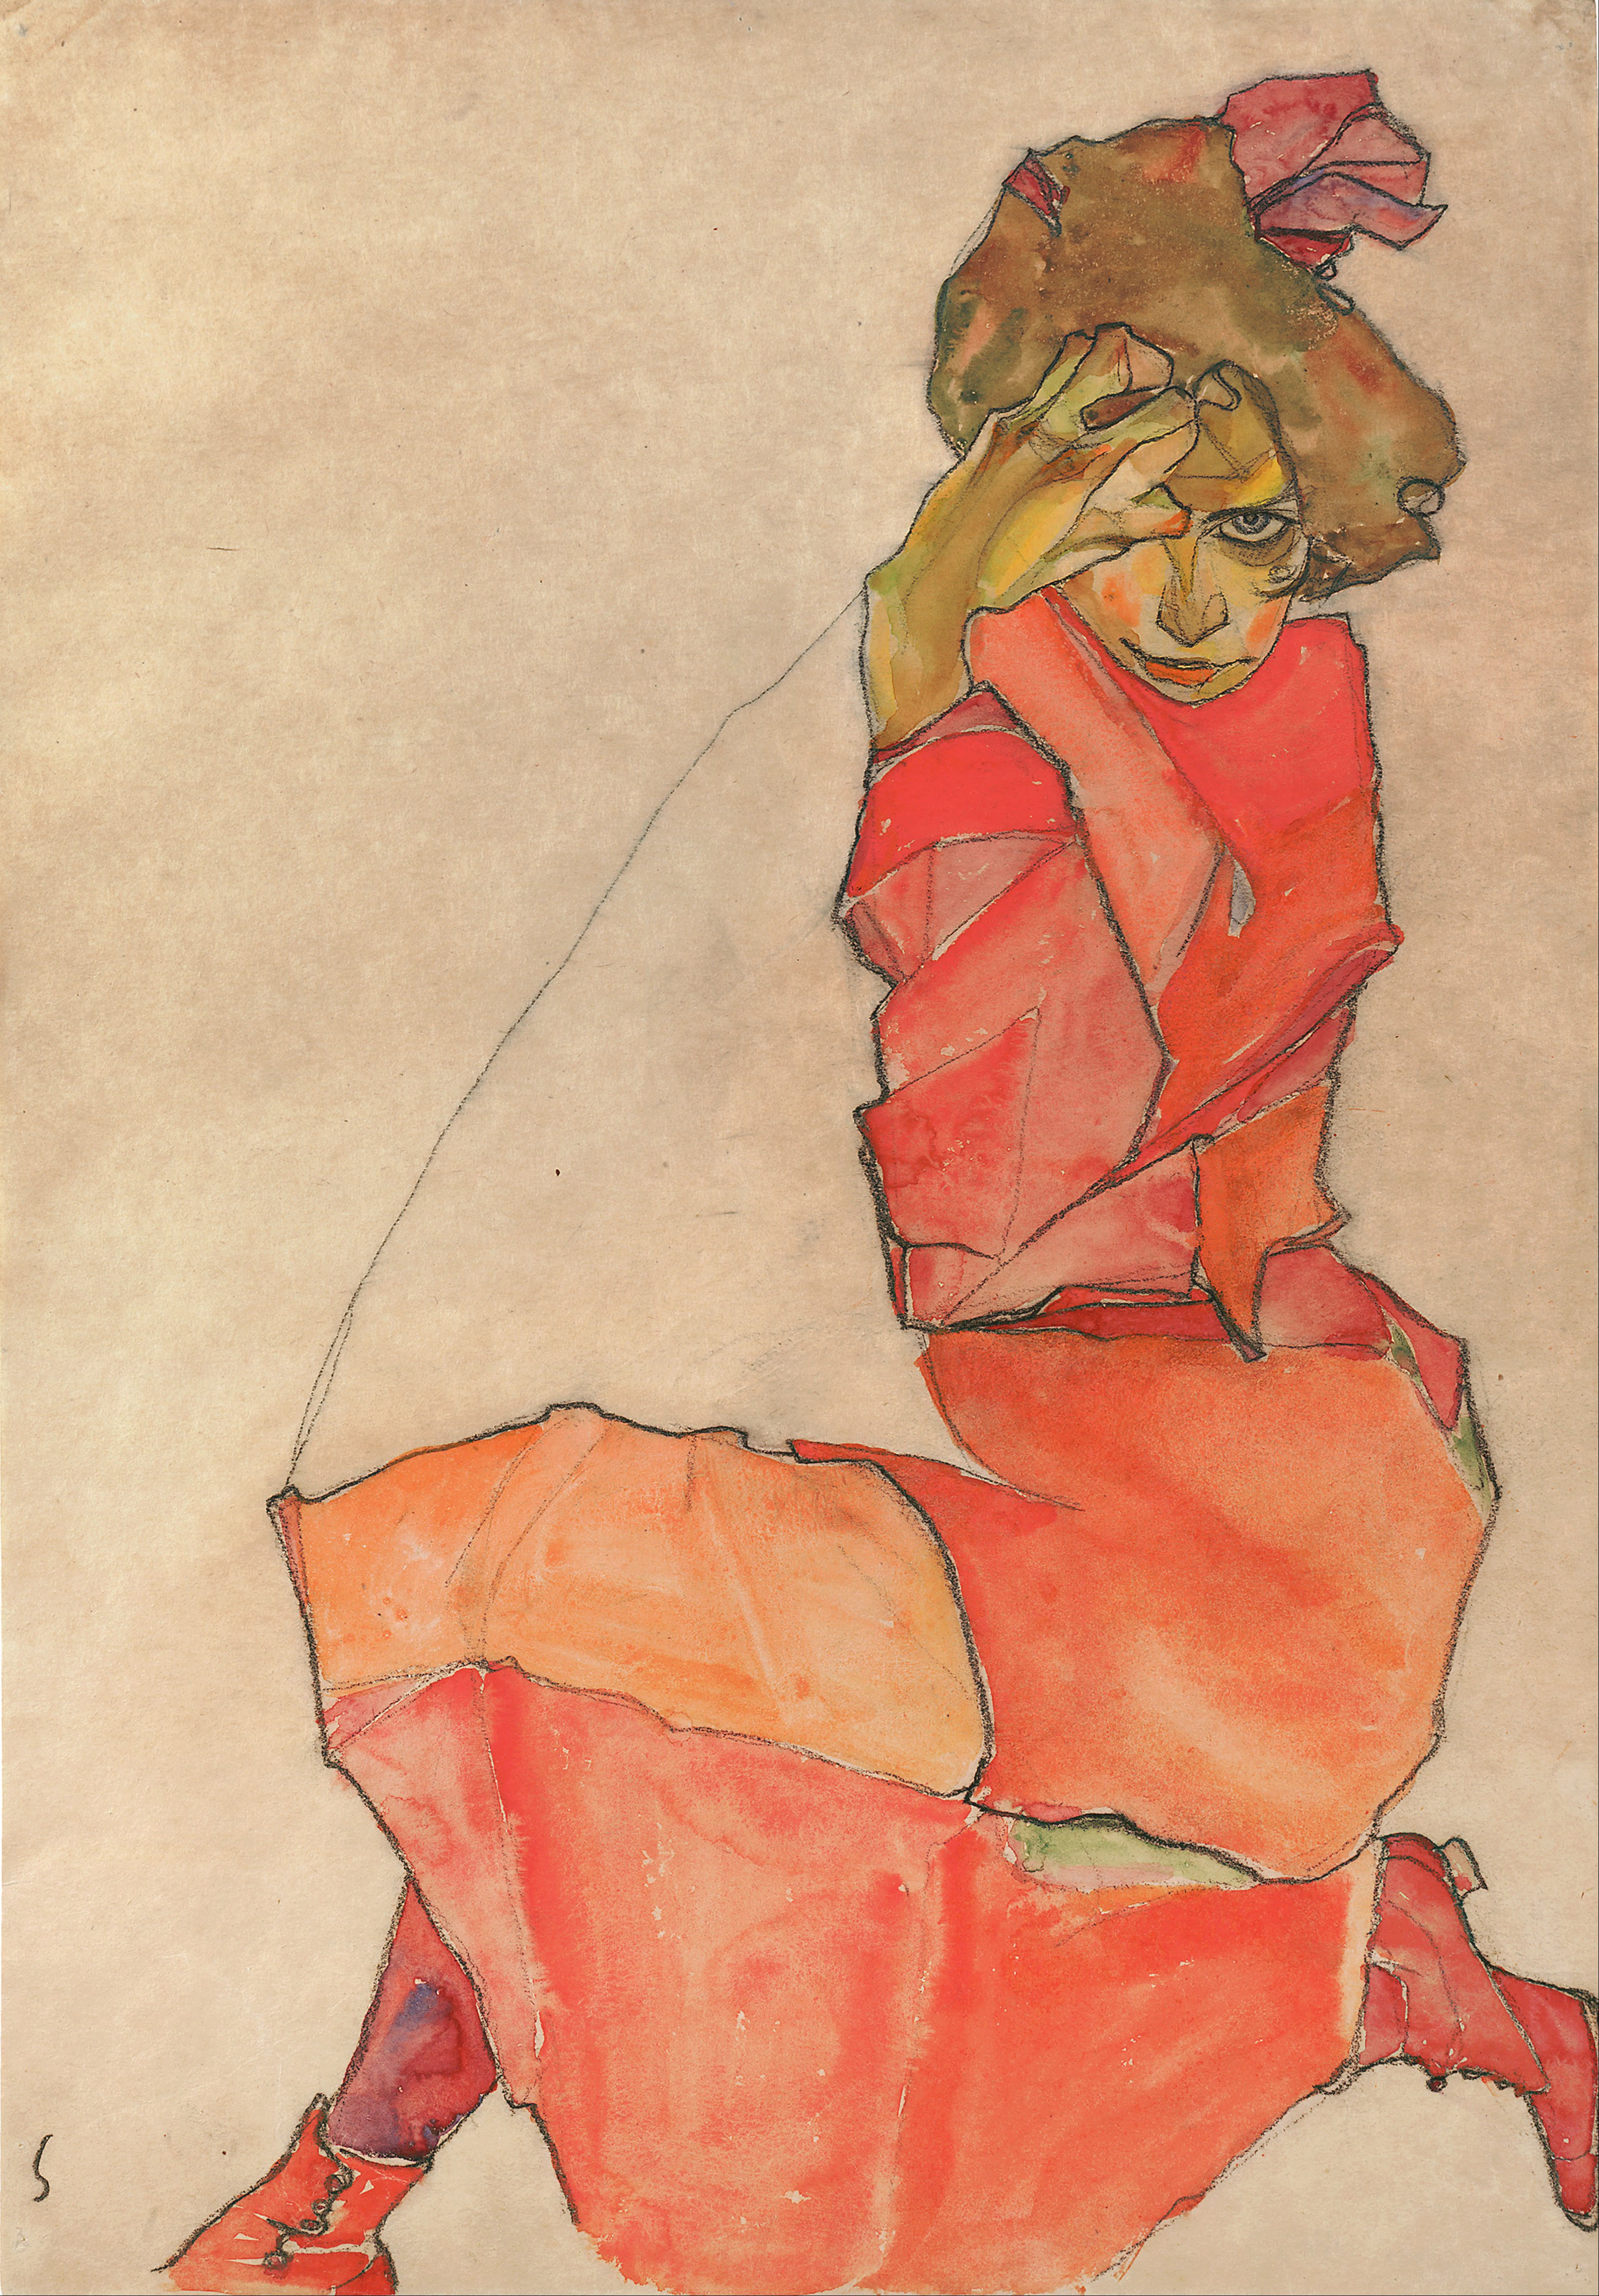 Kneeling Girl in Orange-Red Dress by Egon Schiele - 1910 - 46.6 x 31 cm Leopold Museum